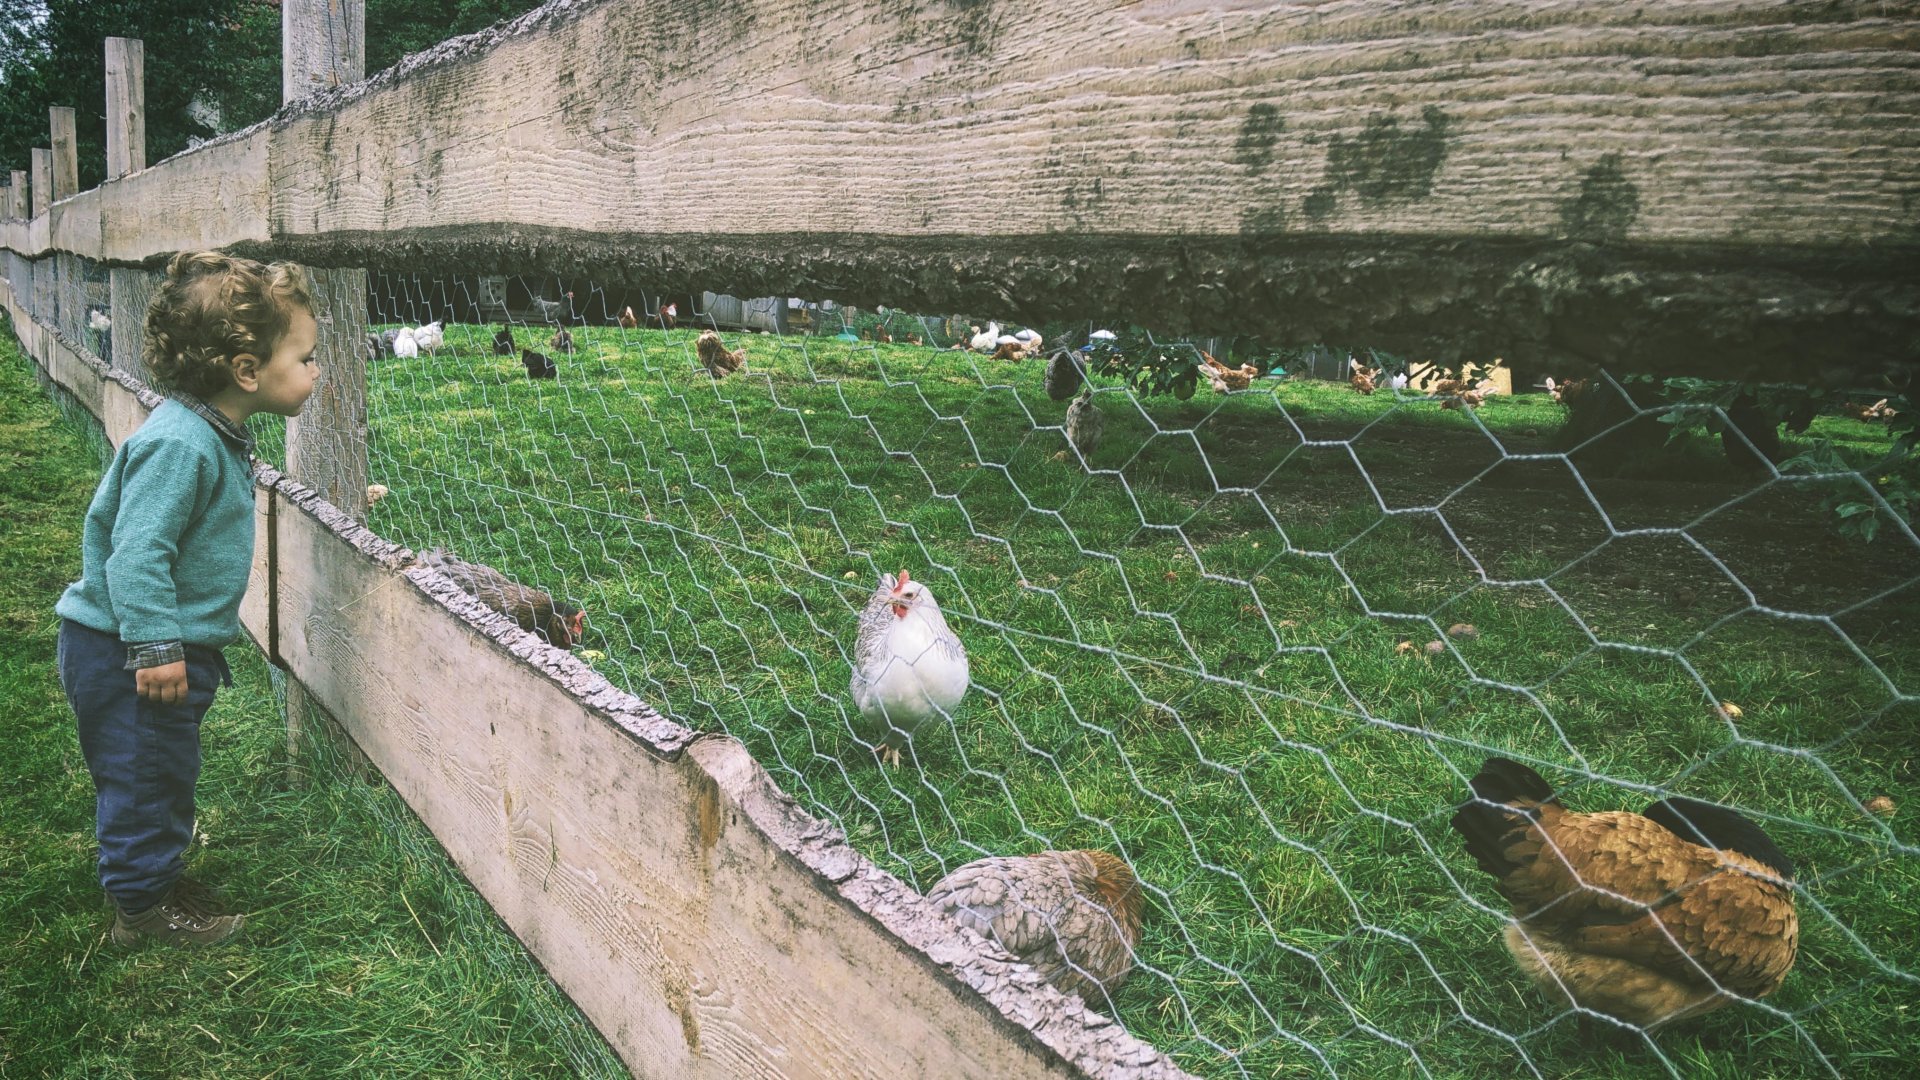 Kerítés mögött lévő csirkéket néz egy totyogó kisfiú